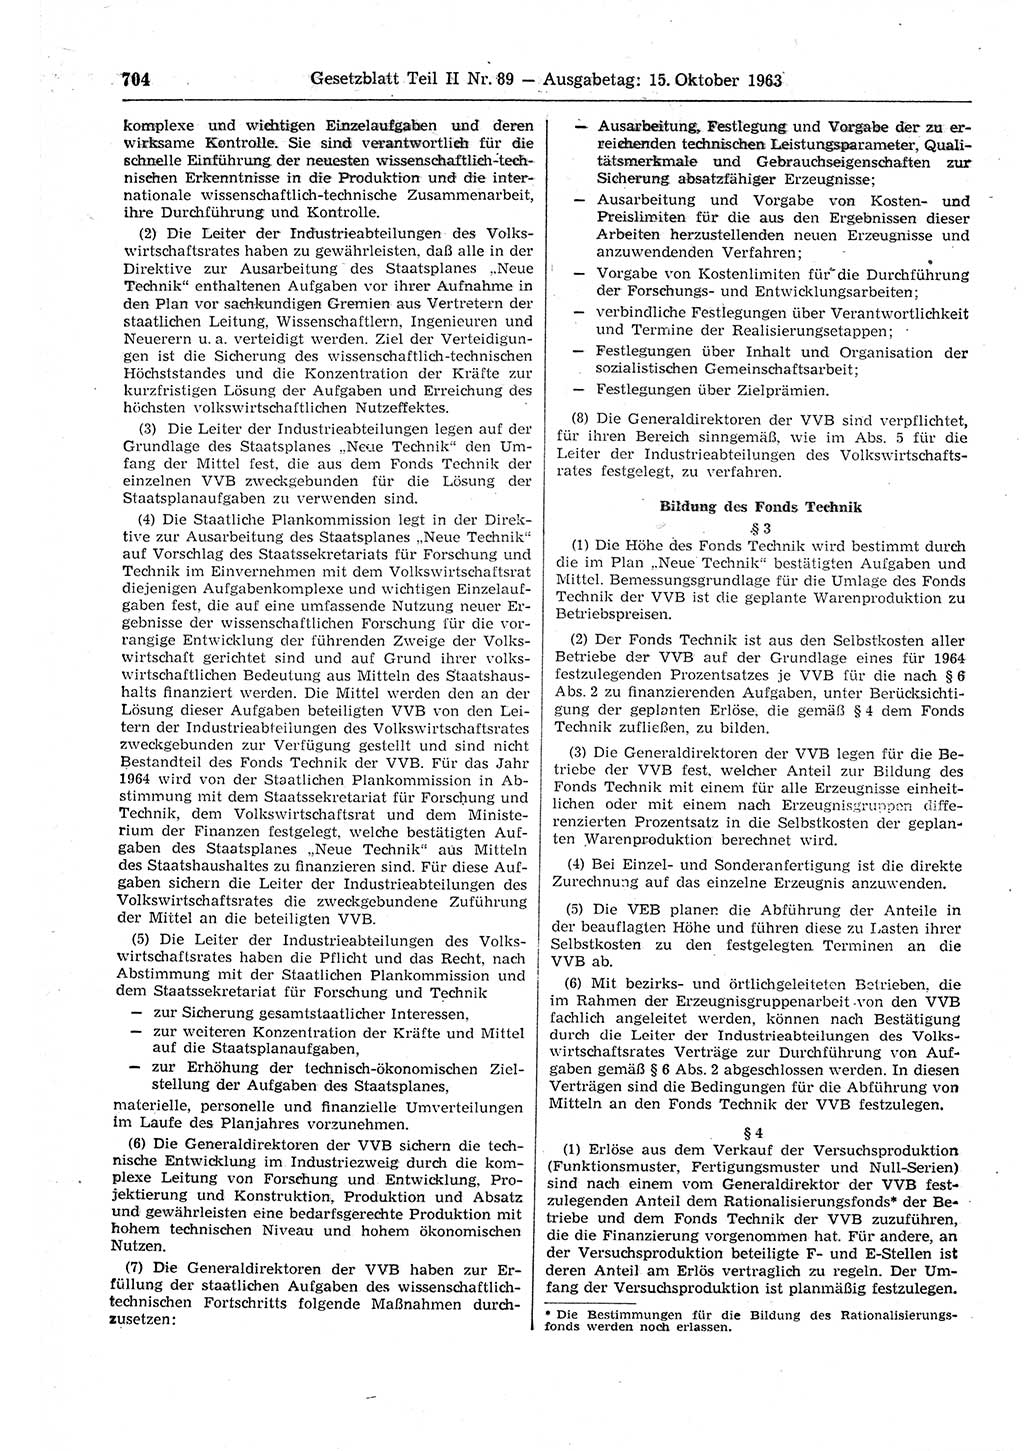 Gesetzblatt (GBl.) der Deutschen Demokratischen Republik (DDR) Teil ⅠⅠ 1963, Seite 704 (GBl. DDR ⅠⅠ 1963, S. 704)